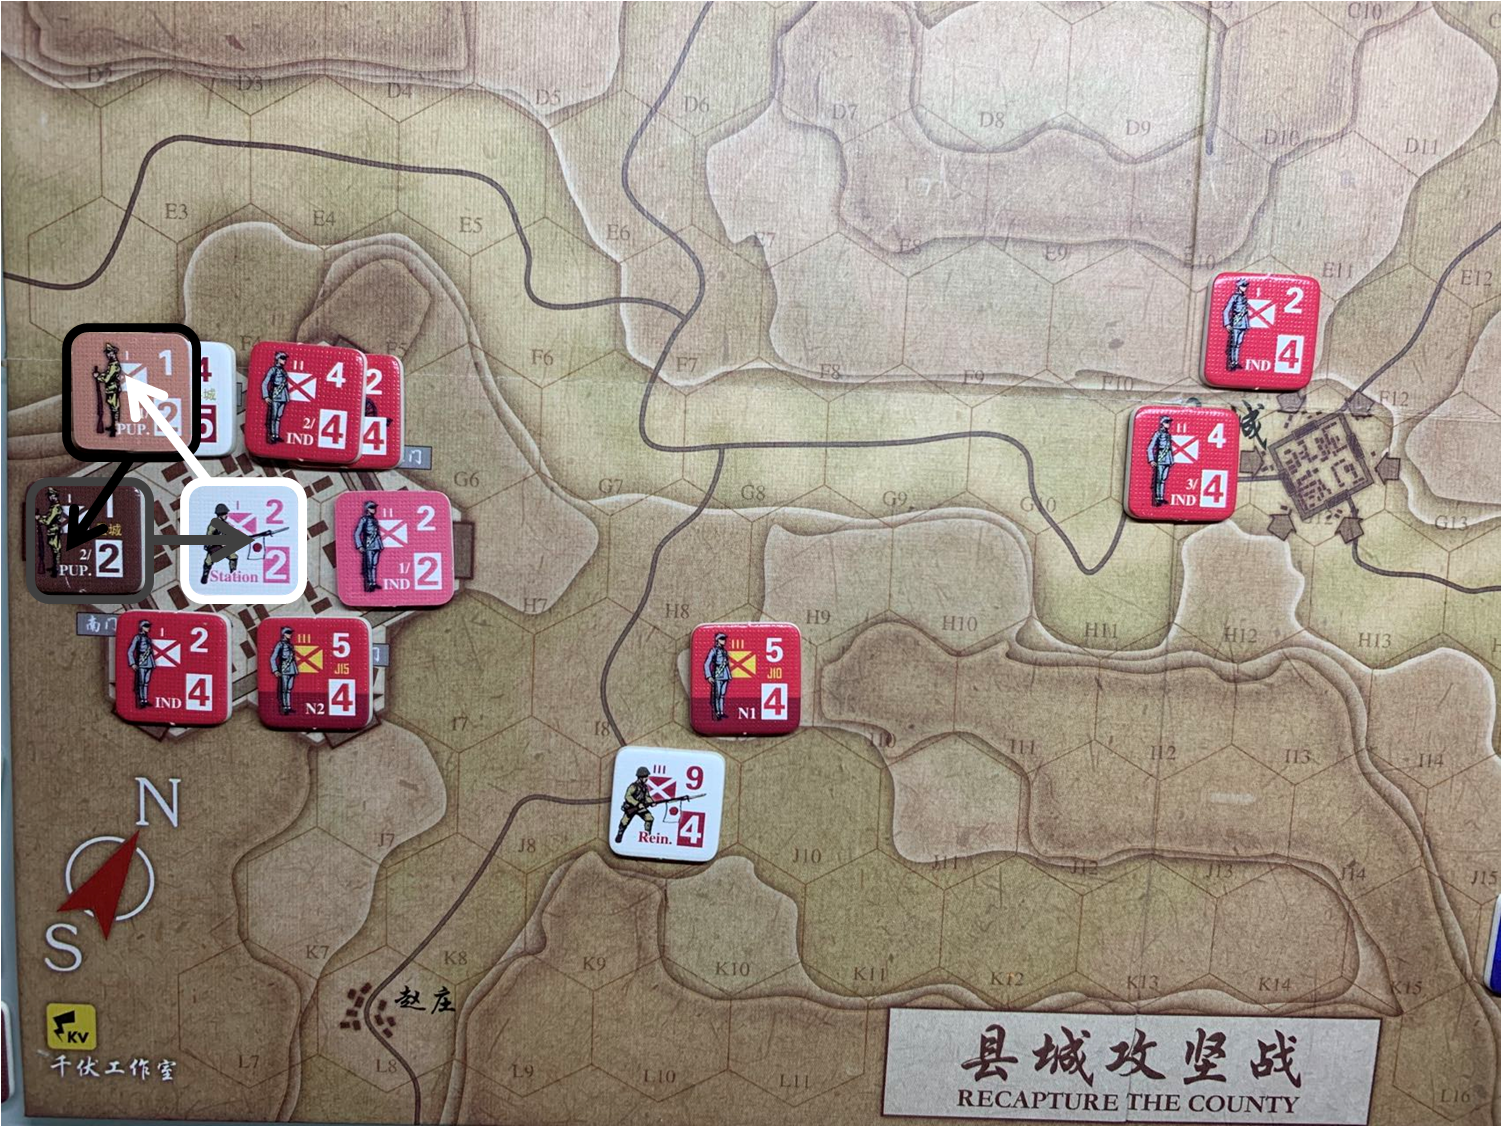 第二回合縣城內日軍Station和偽軍1/PUP.、偽軍2/PUP.守城部隊對於移動命令5的執行計劃